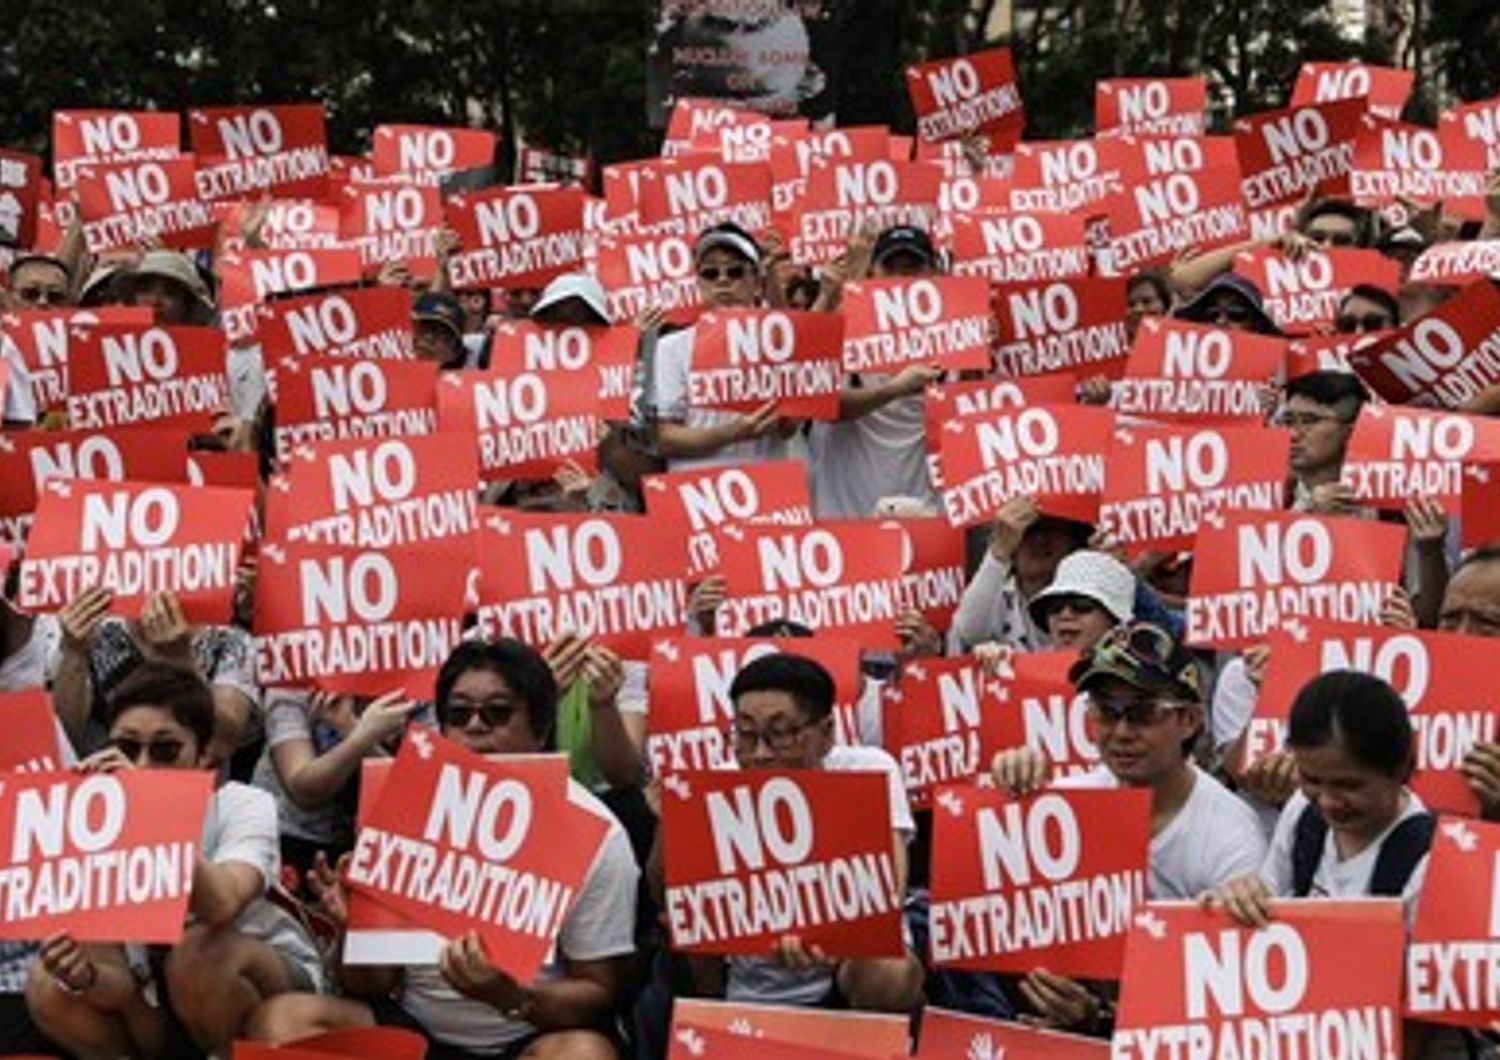 Un momento della protesta del 9 giugno ad Hong Kong per fermare una controversa legge sull'estradizione in Cina